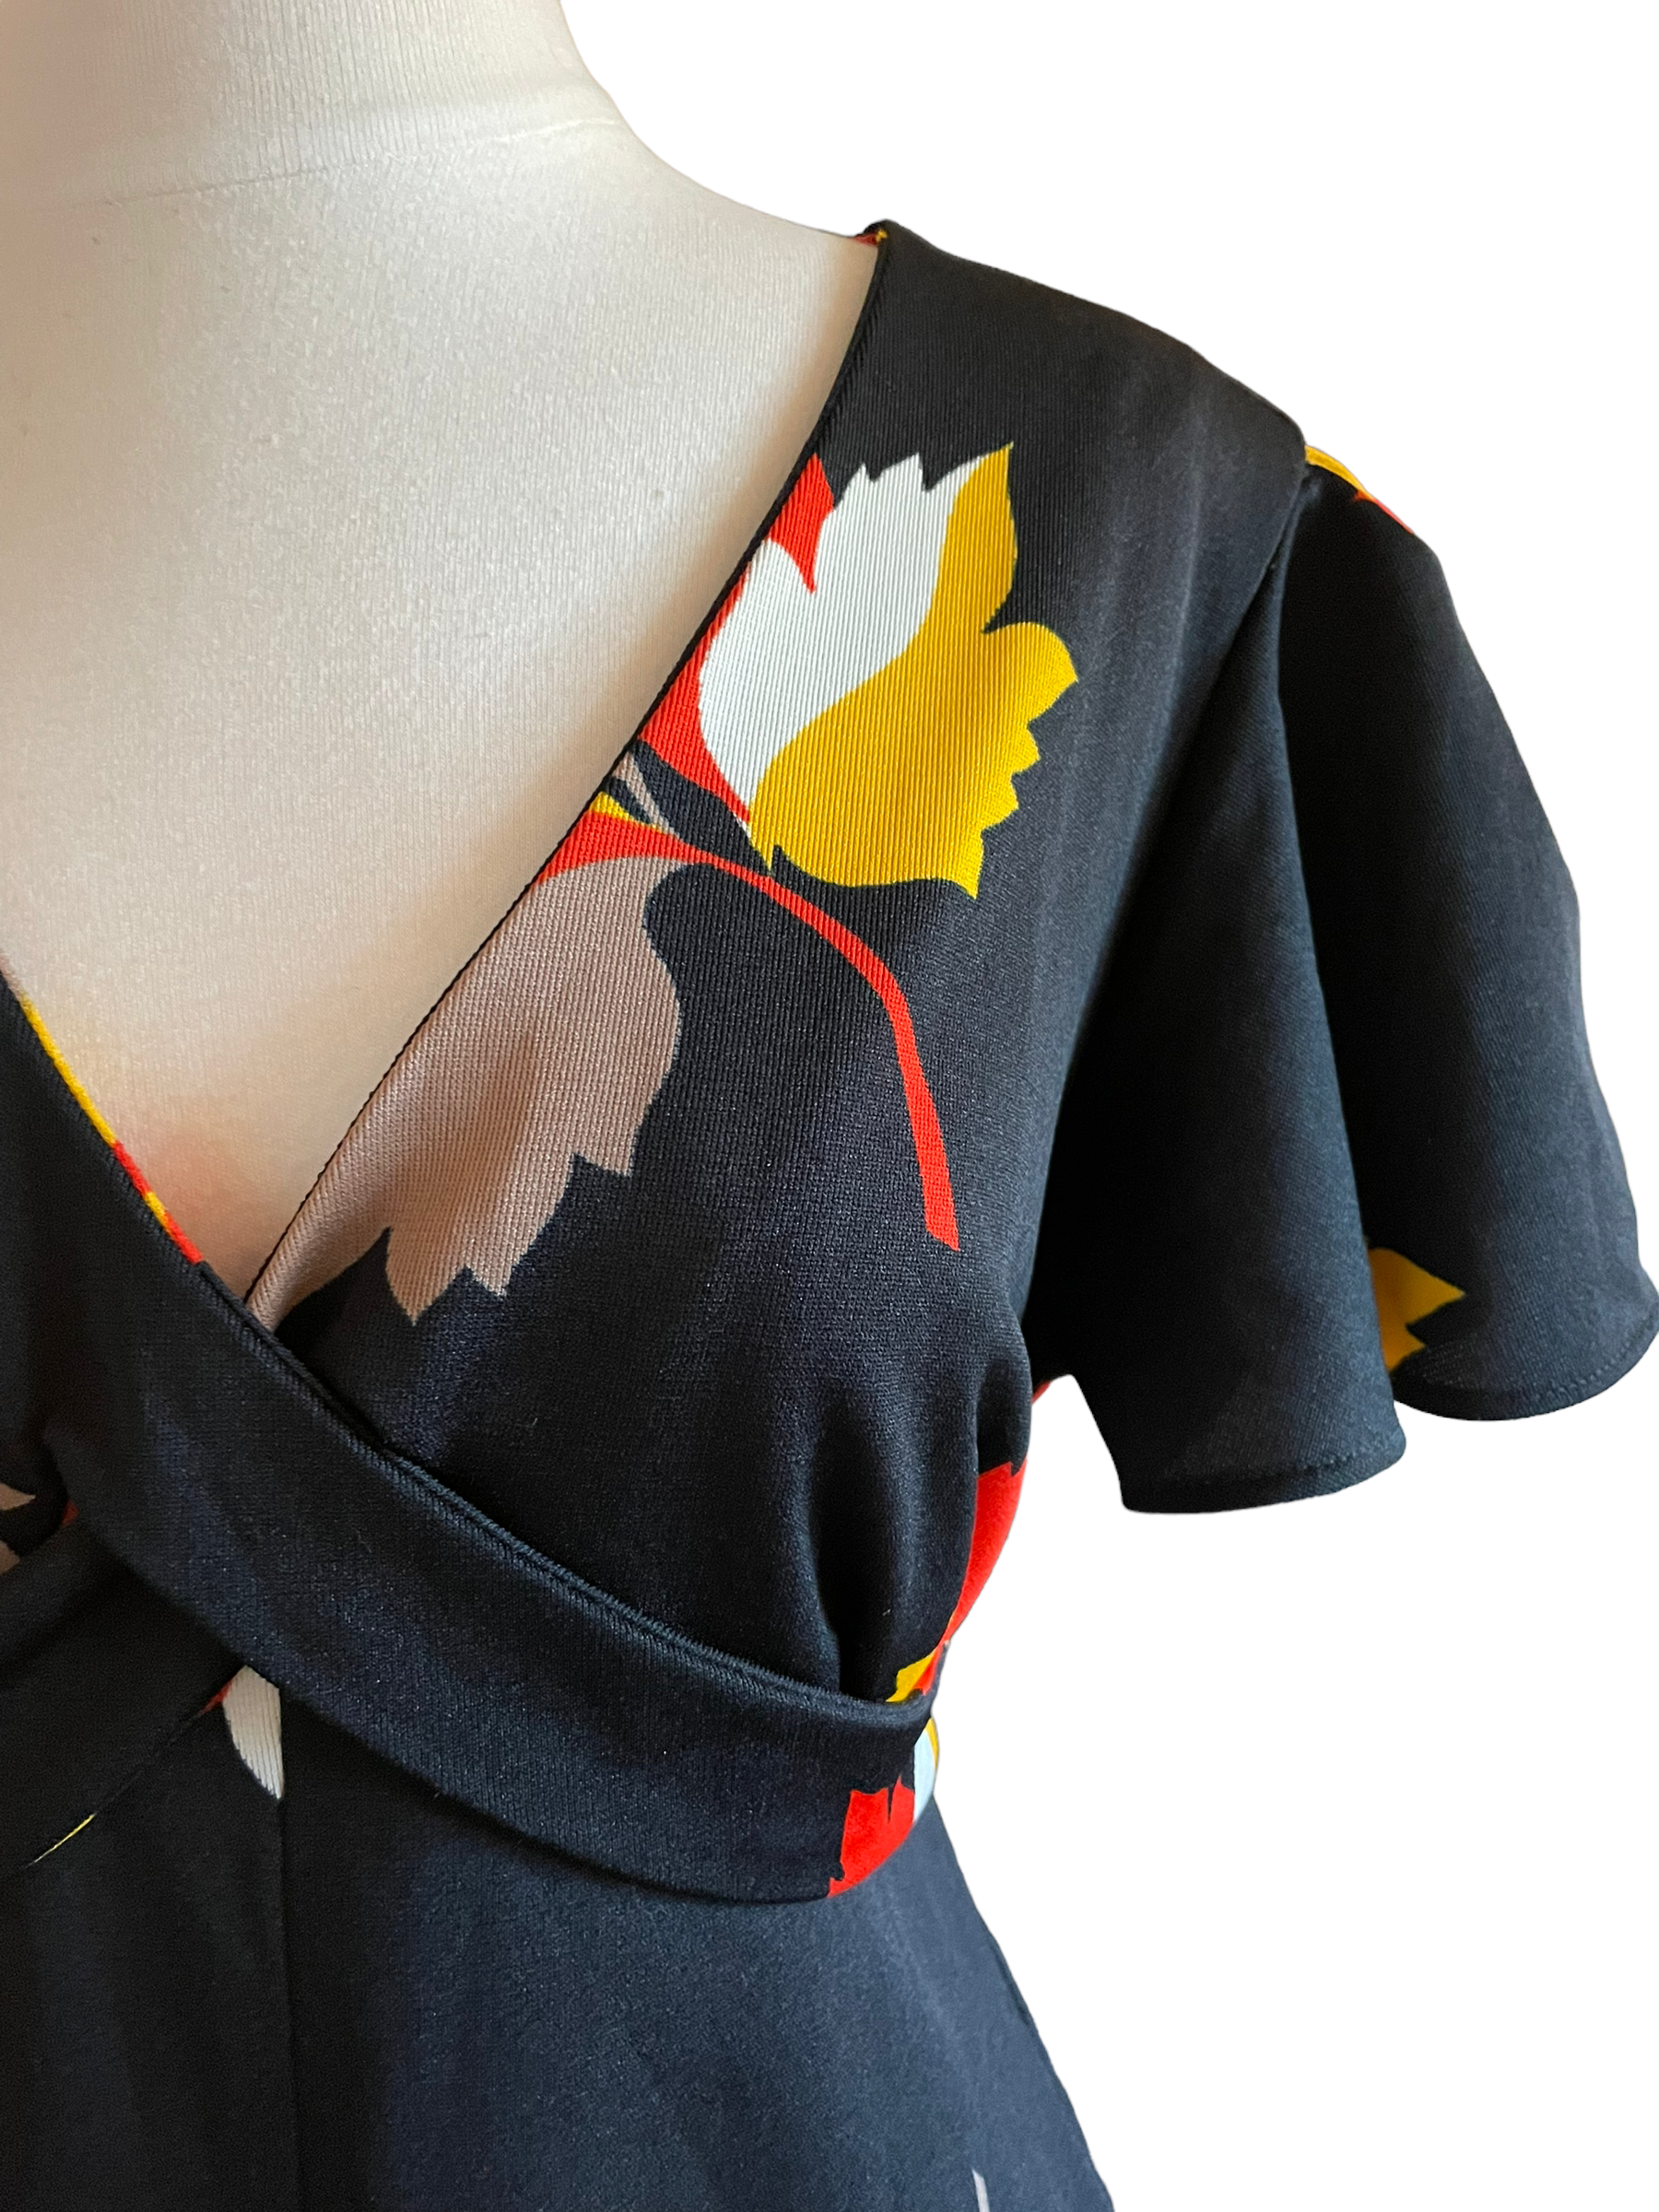 Vintage 1960s Fall Leaves Maxi Dress |  Barn Owl Vintage | Seattle Vintage Dresses Front left shoulder view.